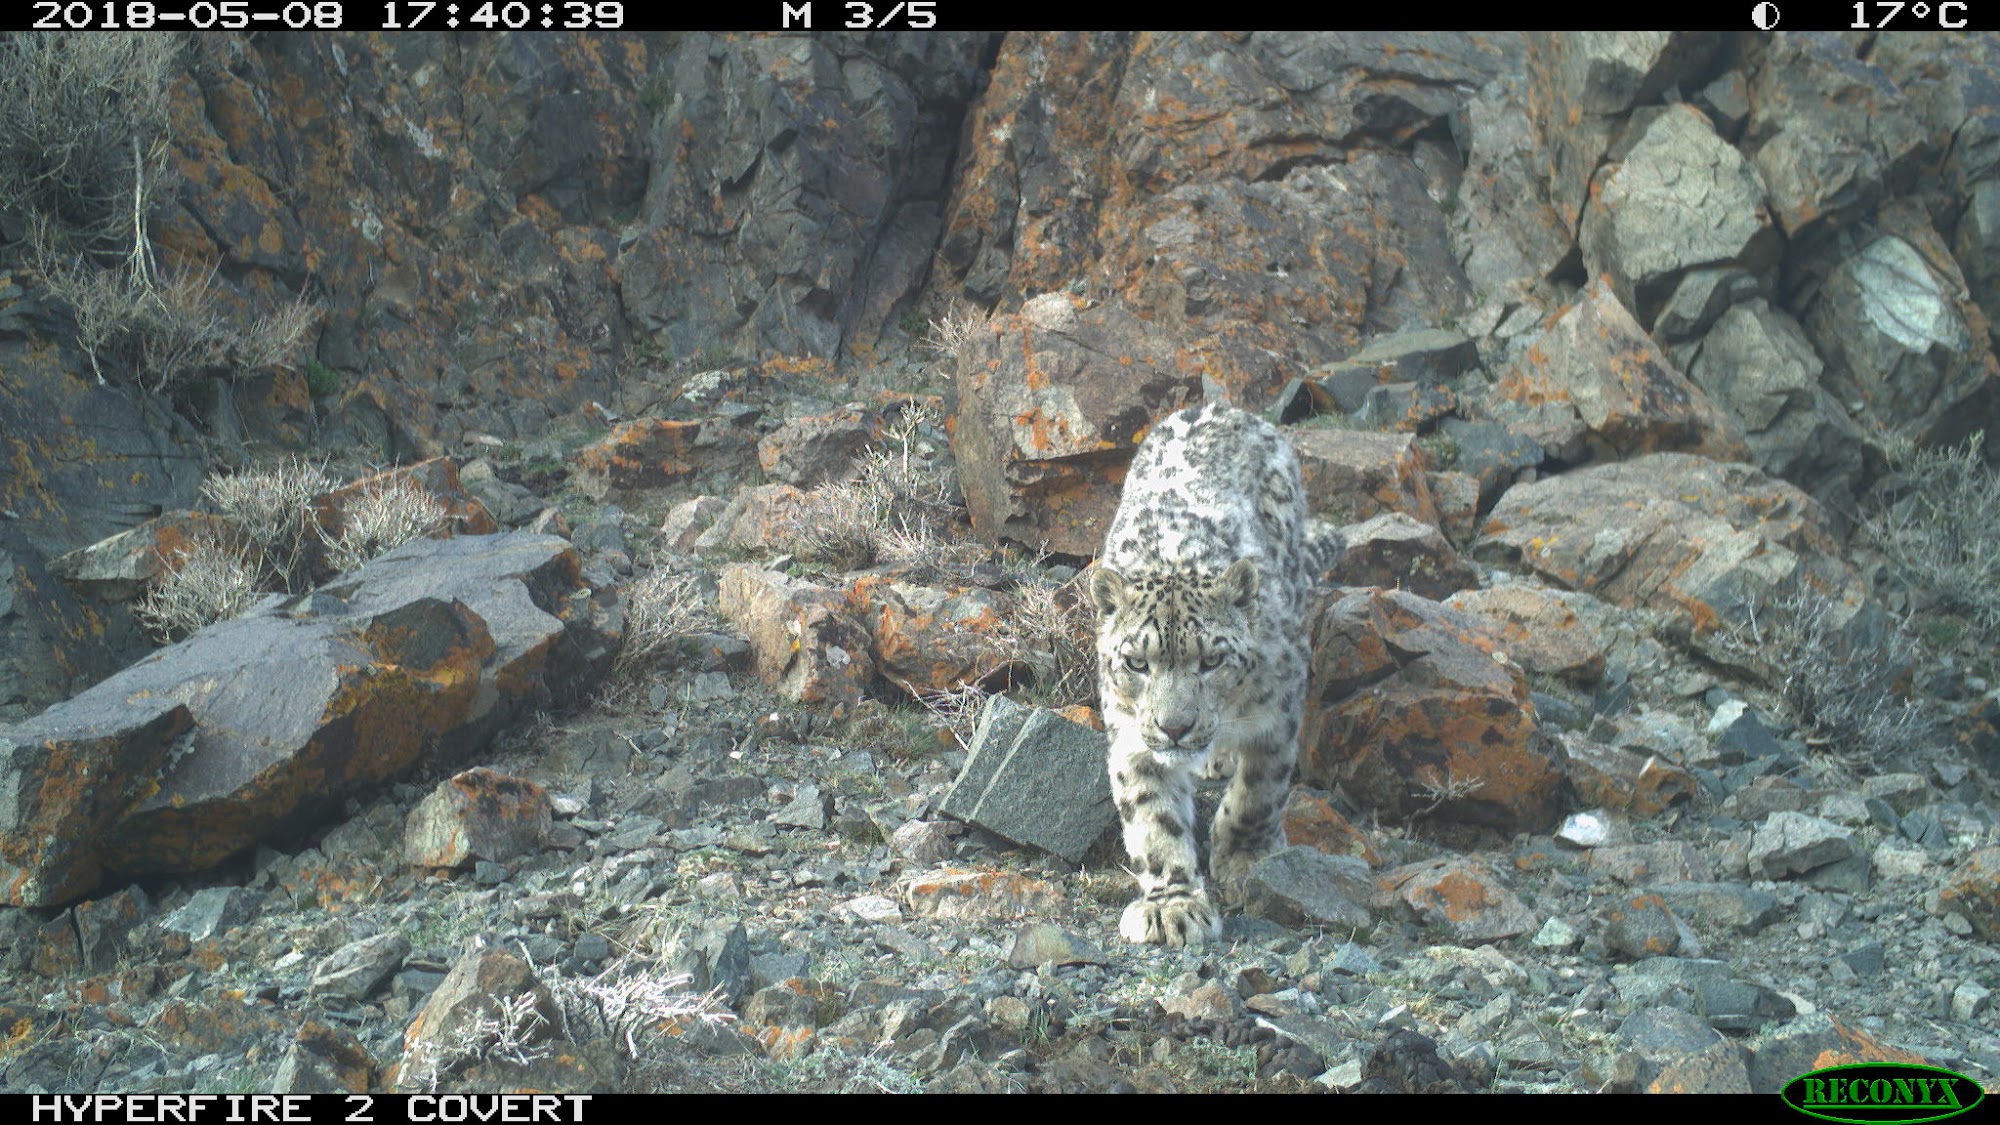 immagine-del-leopardo-delle-nevi-scattata-dalla-fototrappola-francesco-rovero.jpg